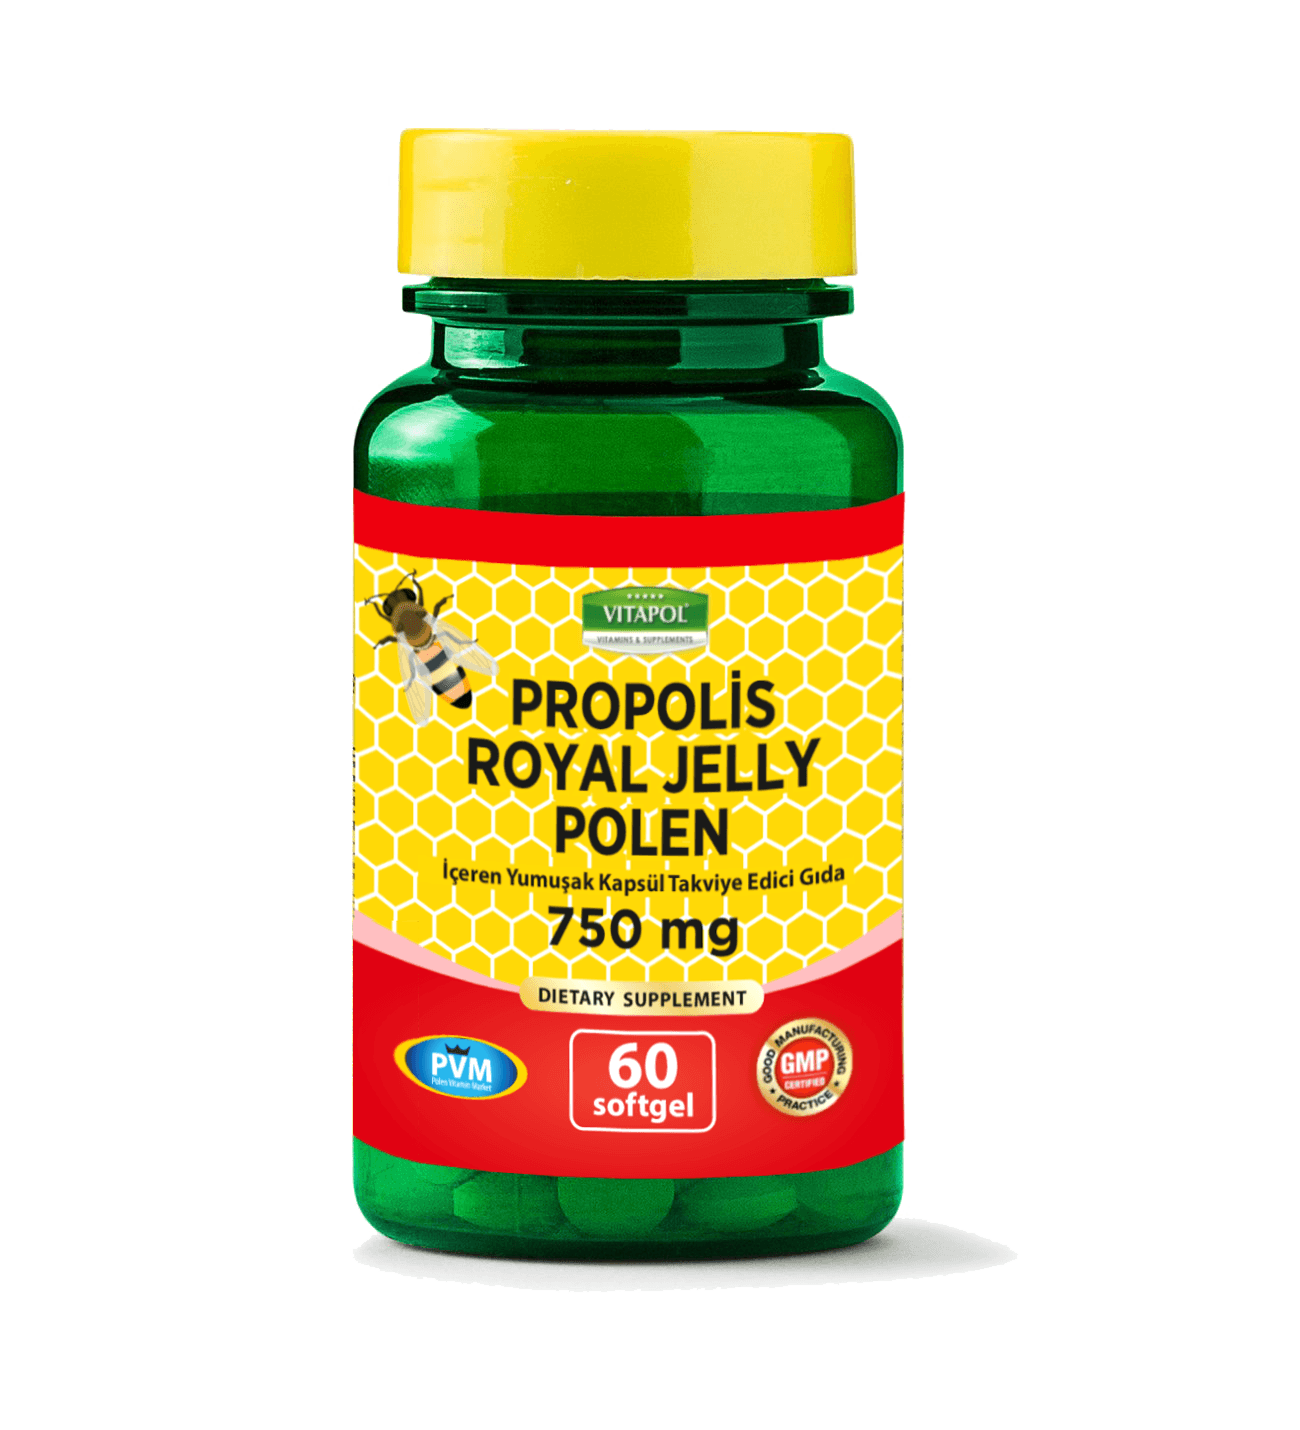 Propolis Royal Jelly Polen 750 Mg 60 Softjel